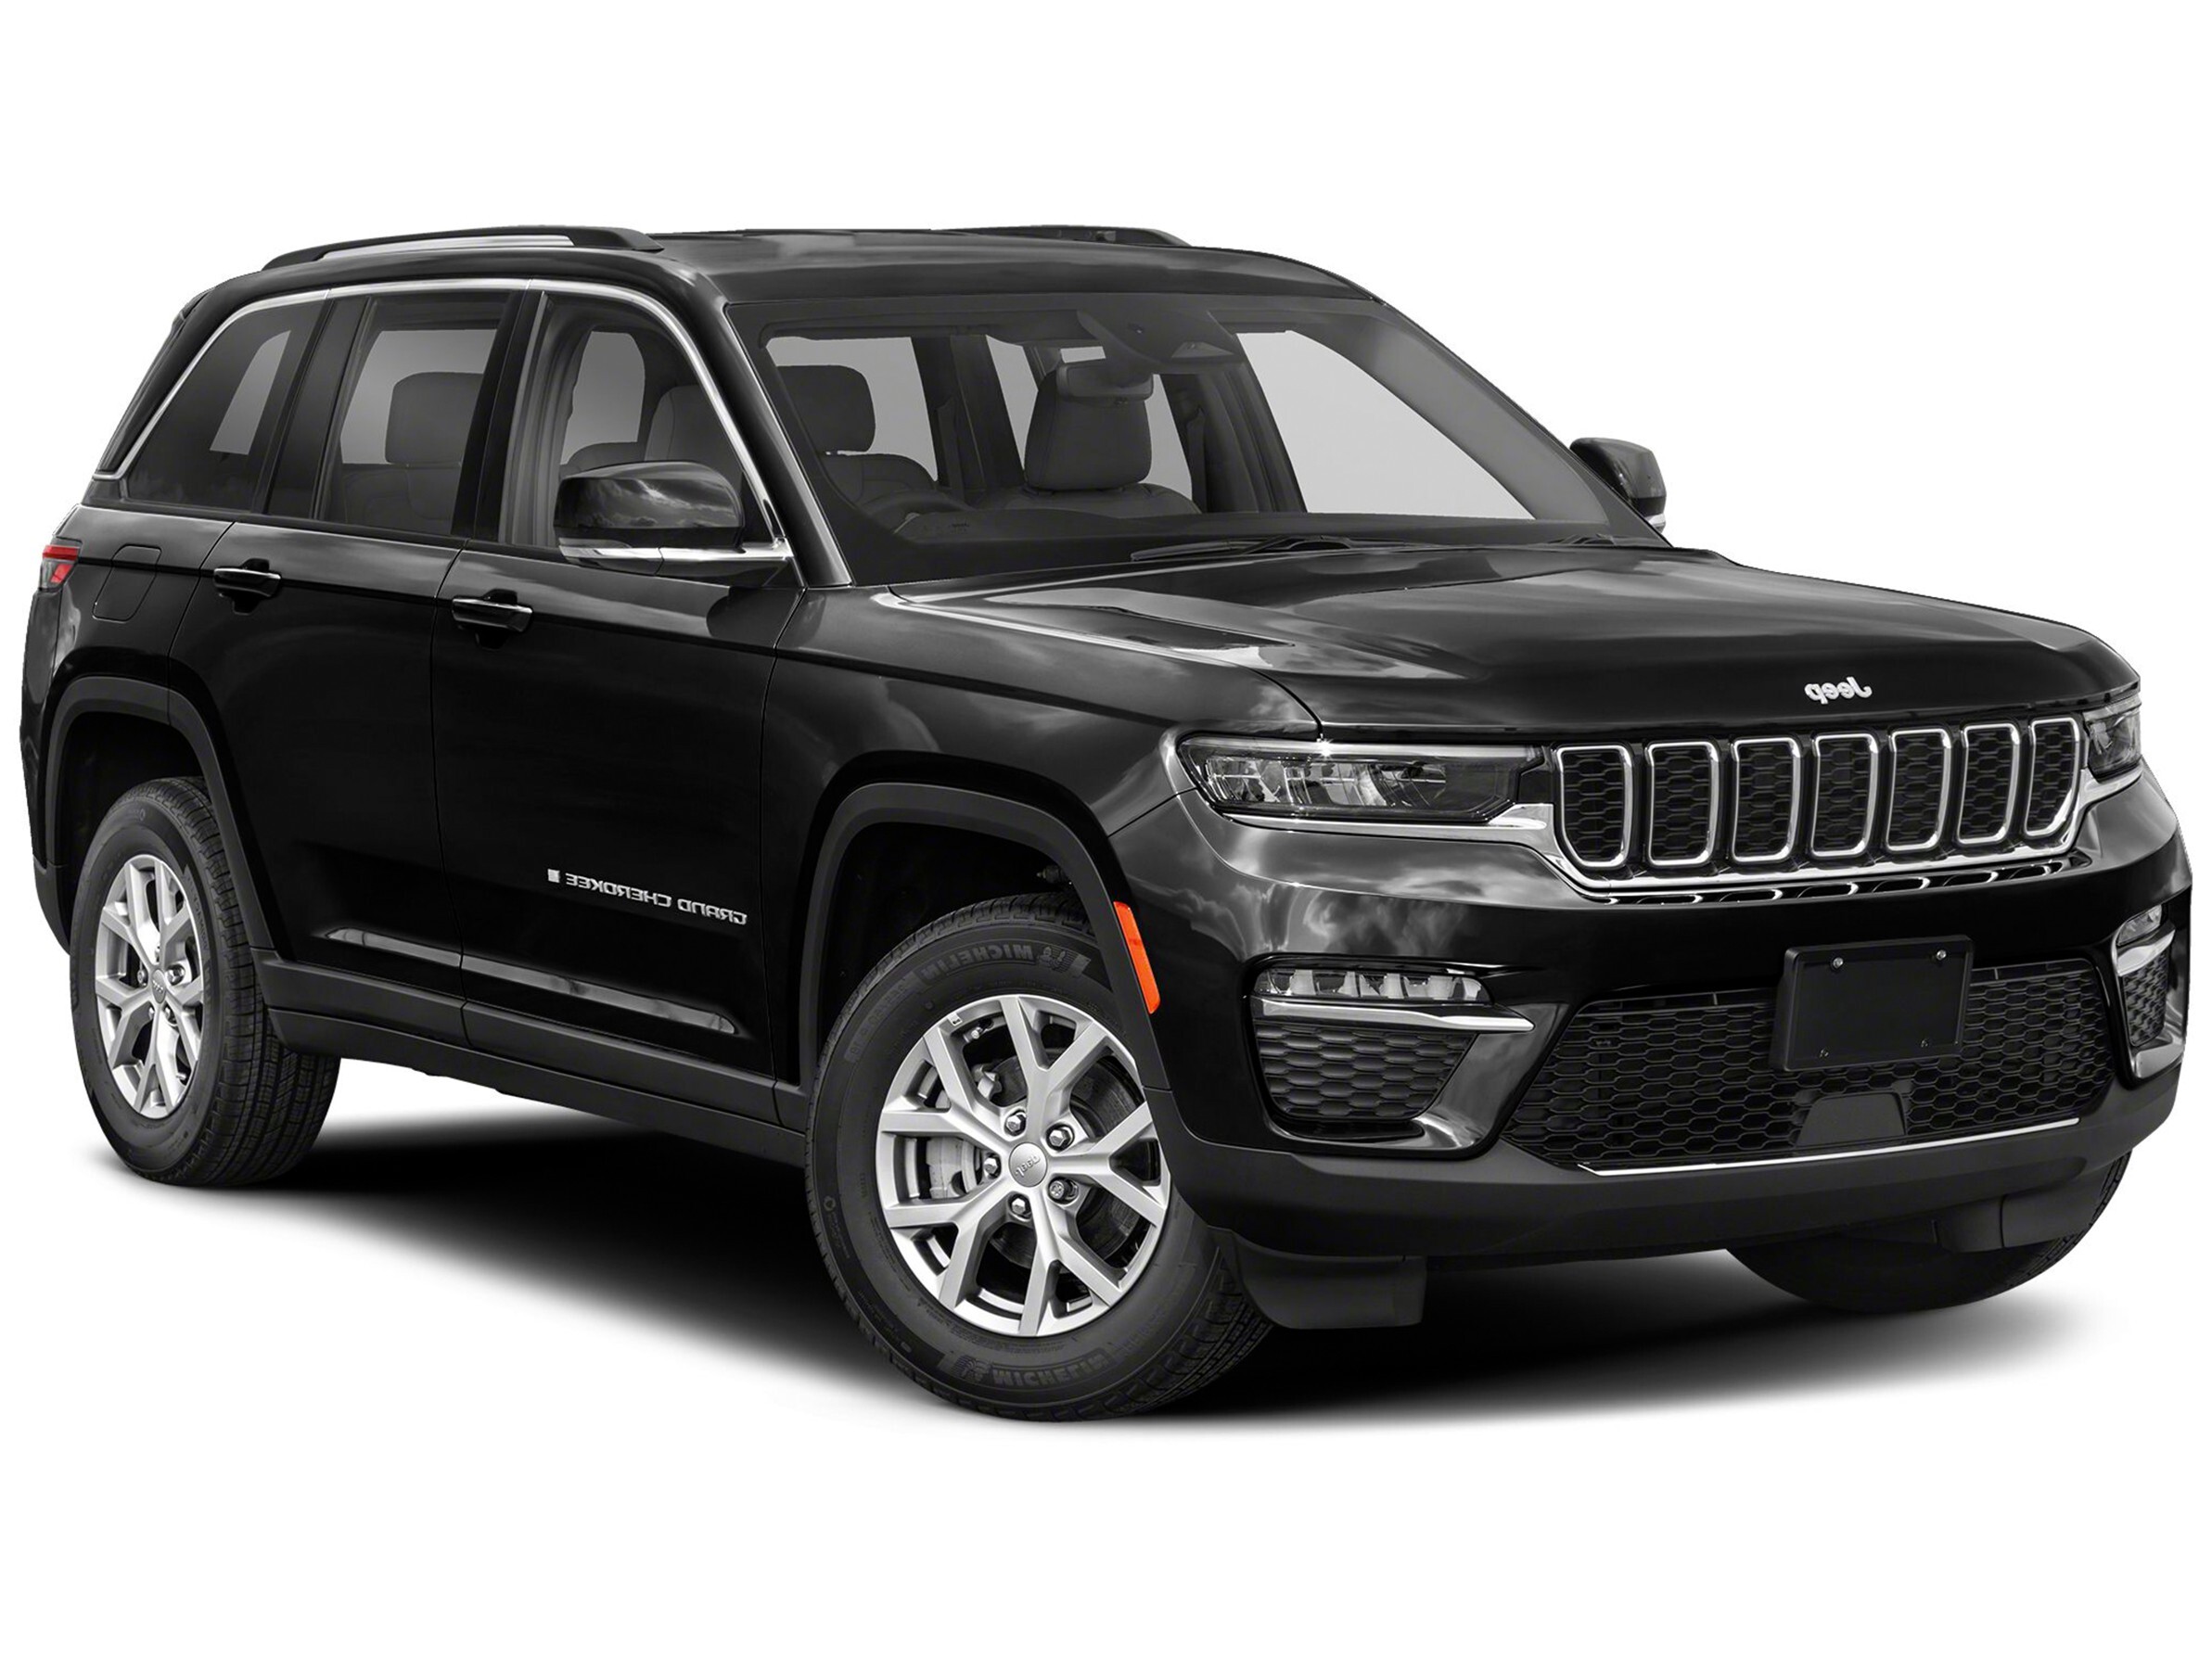 2022 Jeep Grand Cherokee Summit Reserve 4x4, 5.7L Hemi, Nav, Loaded